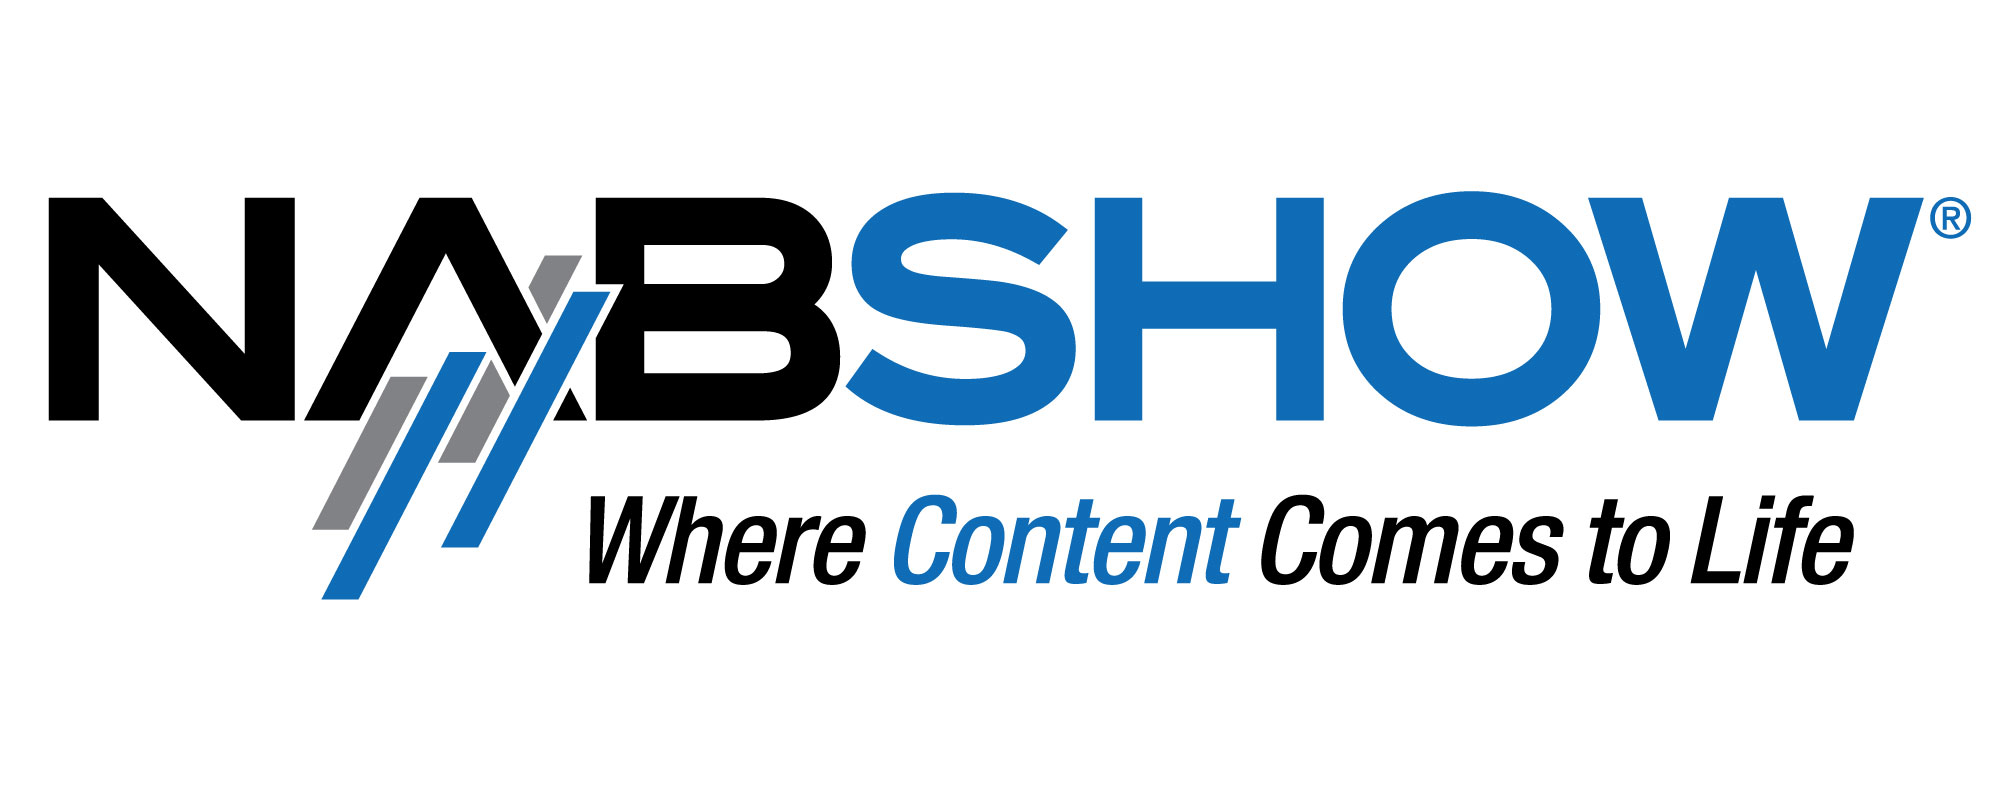 nab-show-logo.jpg